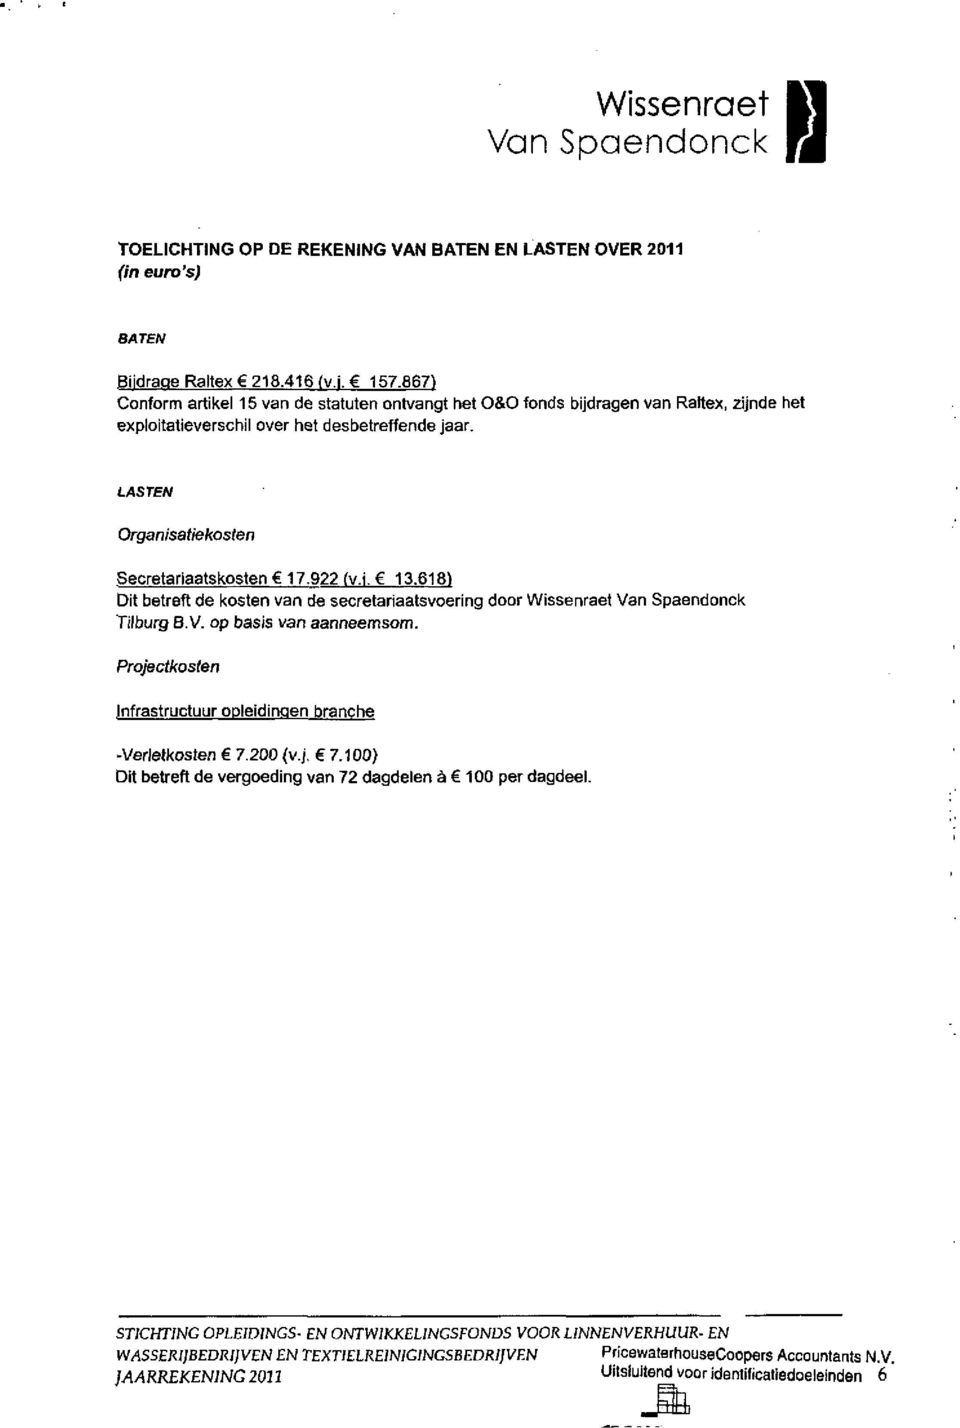 922 fv.i. 13.618) Dit betreft de kosten van de secretariaatsvoering door Wissenraet Tilburg B.V. op basis van aanneemsom. Projectl<osten infrastructuur opleidingen branche -Verletkosten 7.200 (vj.